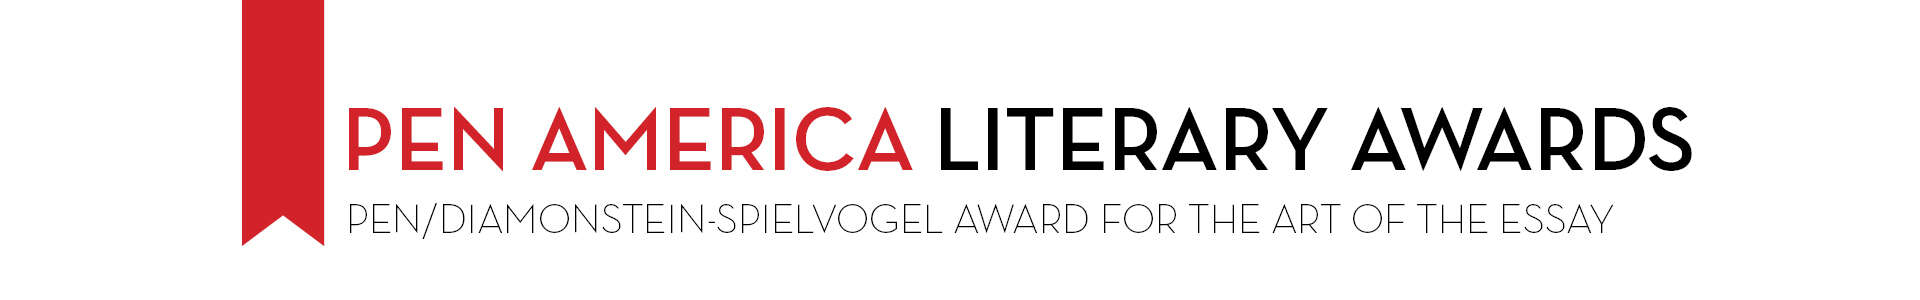 PEN America Literary Awards PEN/Diamonstein-Spielvogel Award for the Art of the Essay